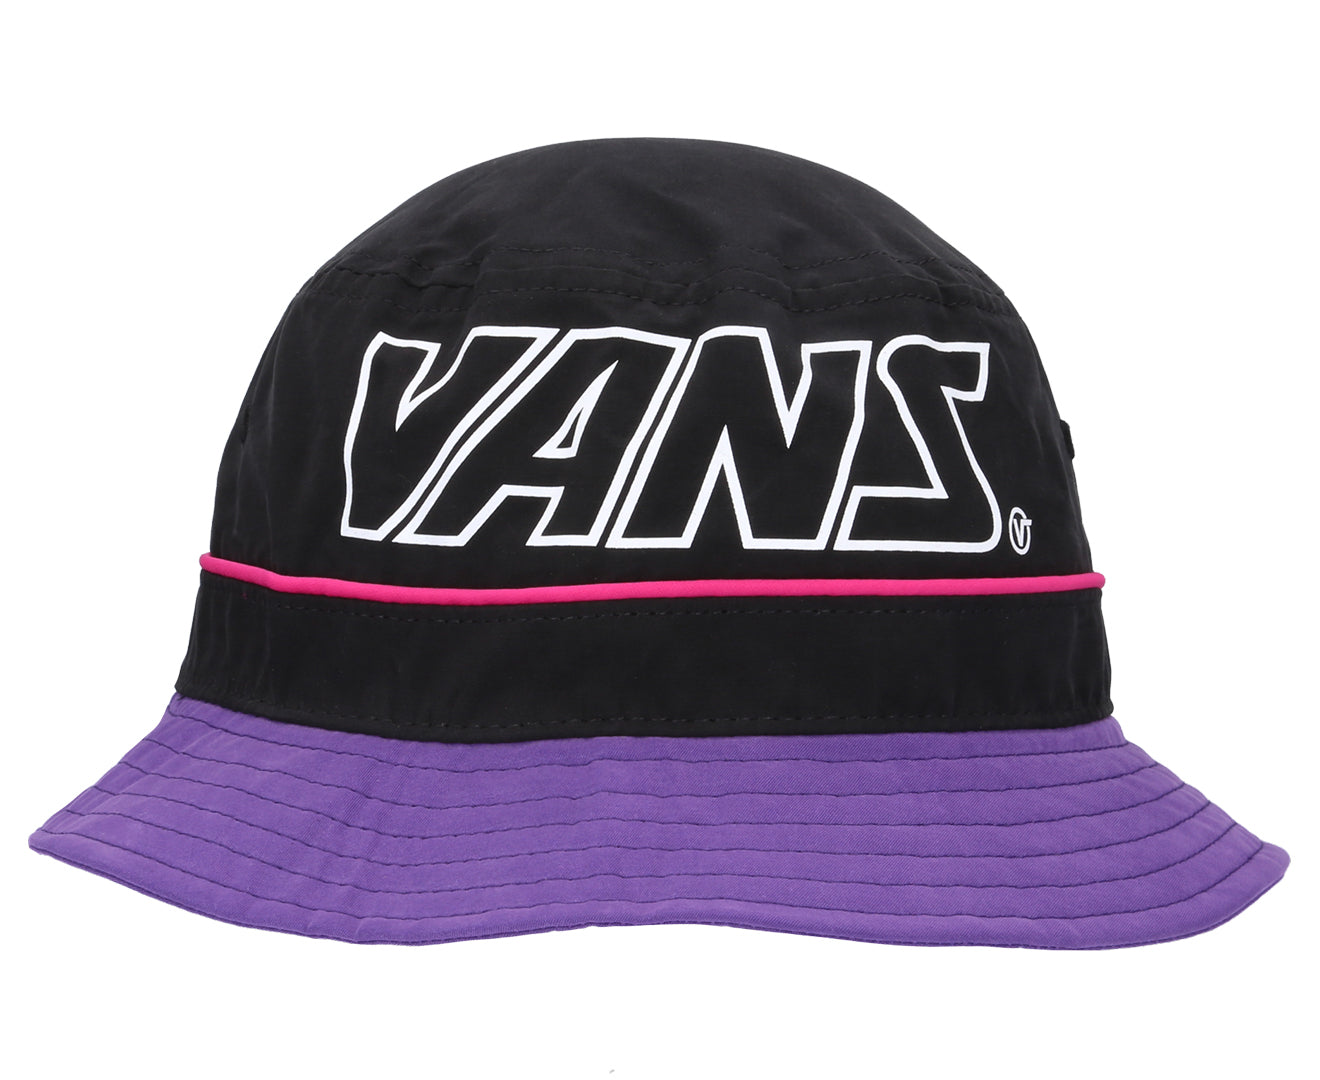 Vans Men's Undertone Bucket Hat, Black/Heliotrope